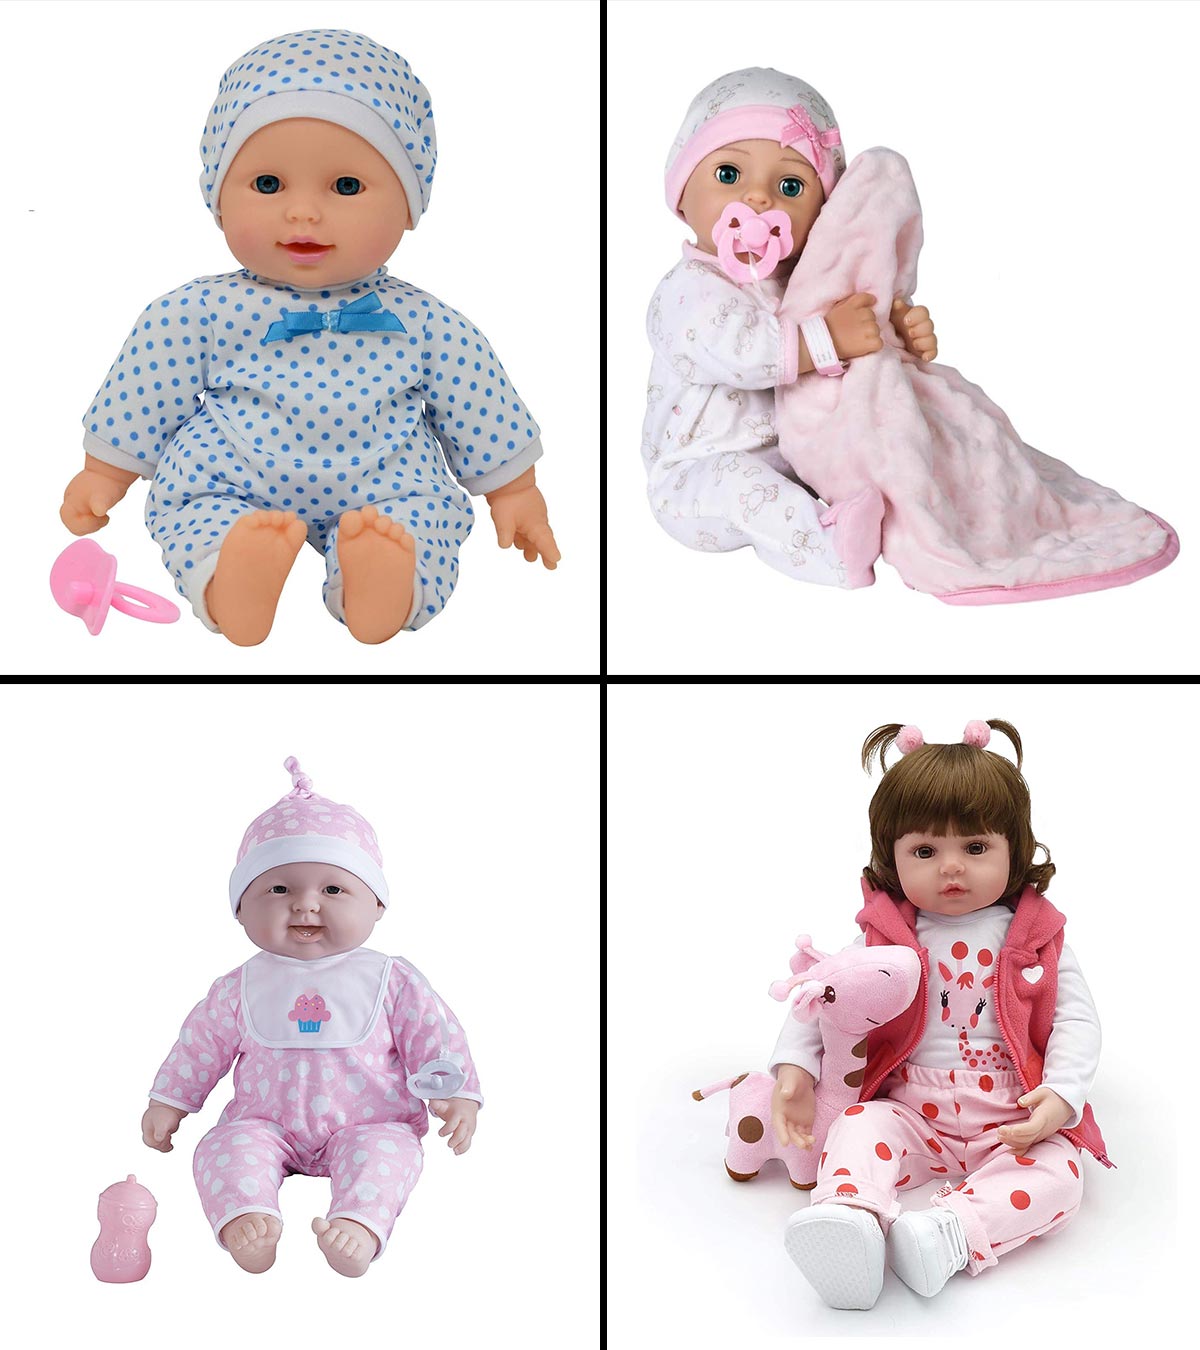 Baby Alive Doll Toys: Sự Sống Động Trong Tay Bé